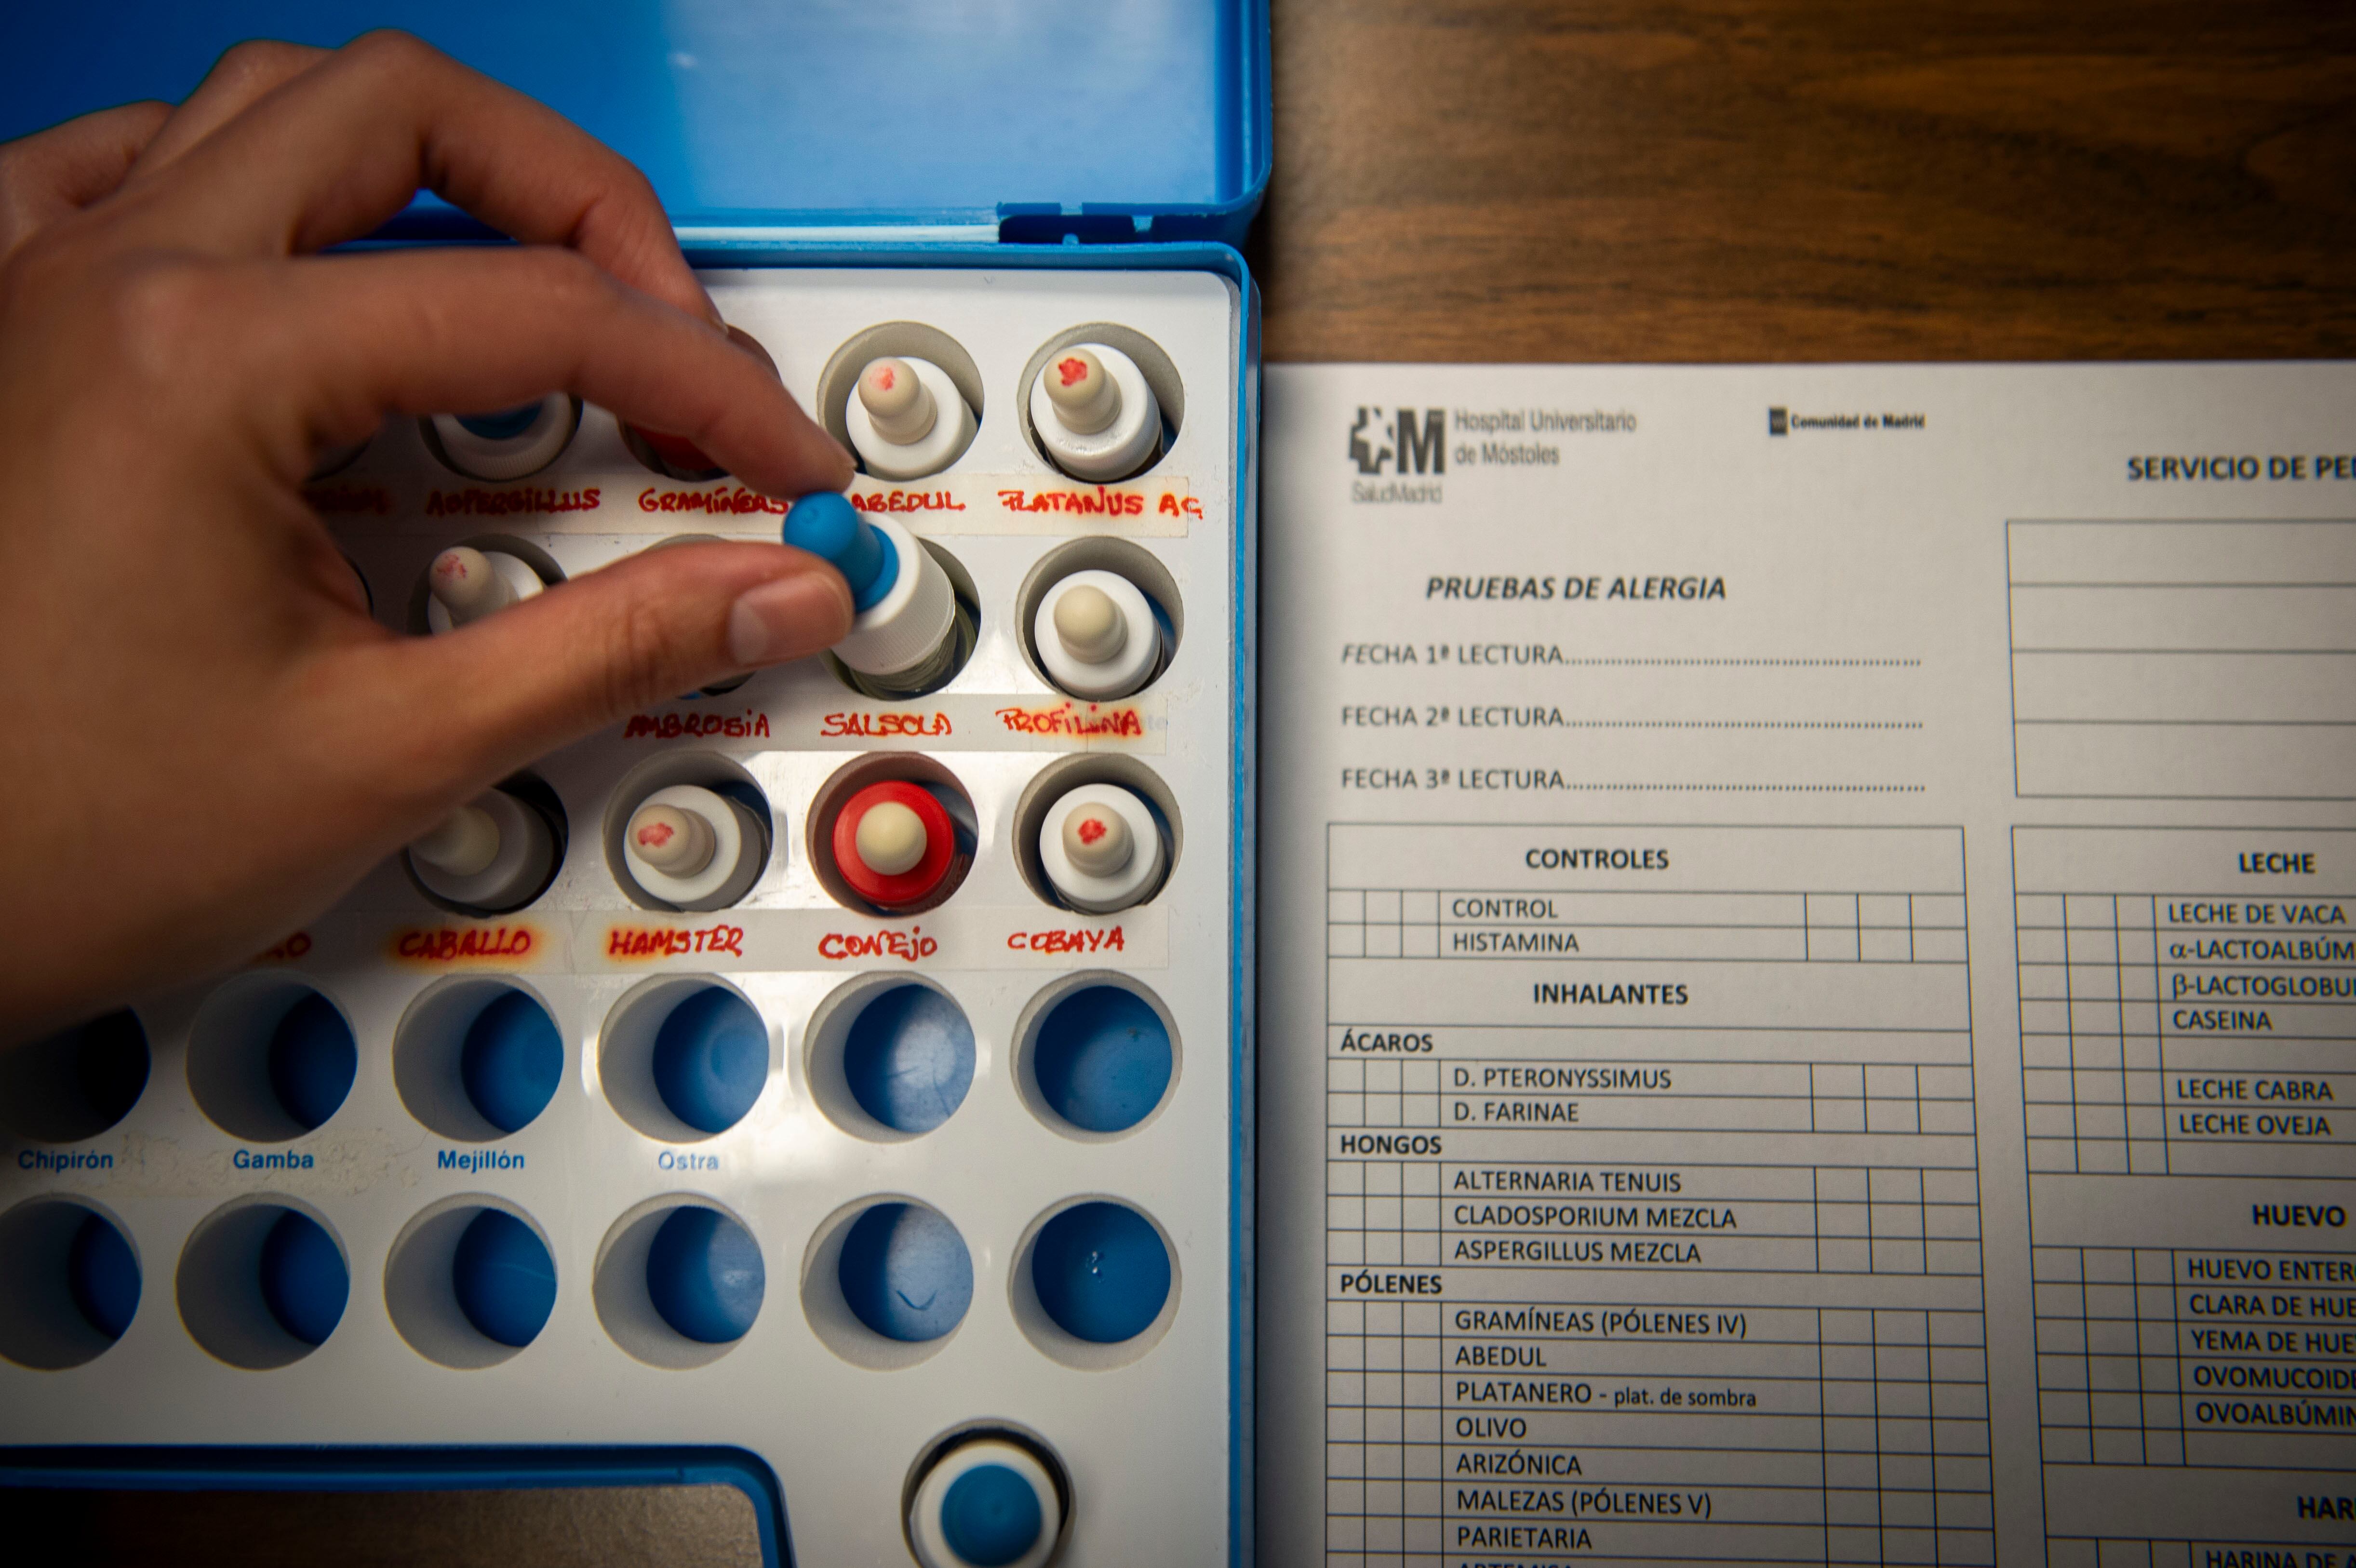 Detalle de los utensilios empleados para hacer pruebas de alergia en el Hospital Universitario de Móstoles.